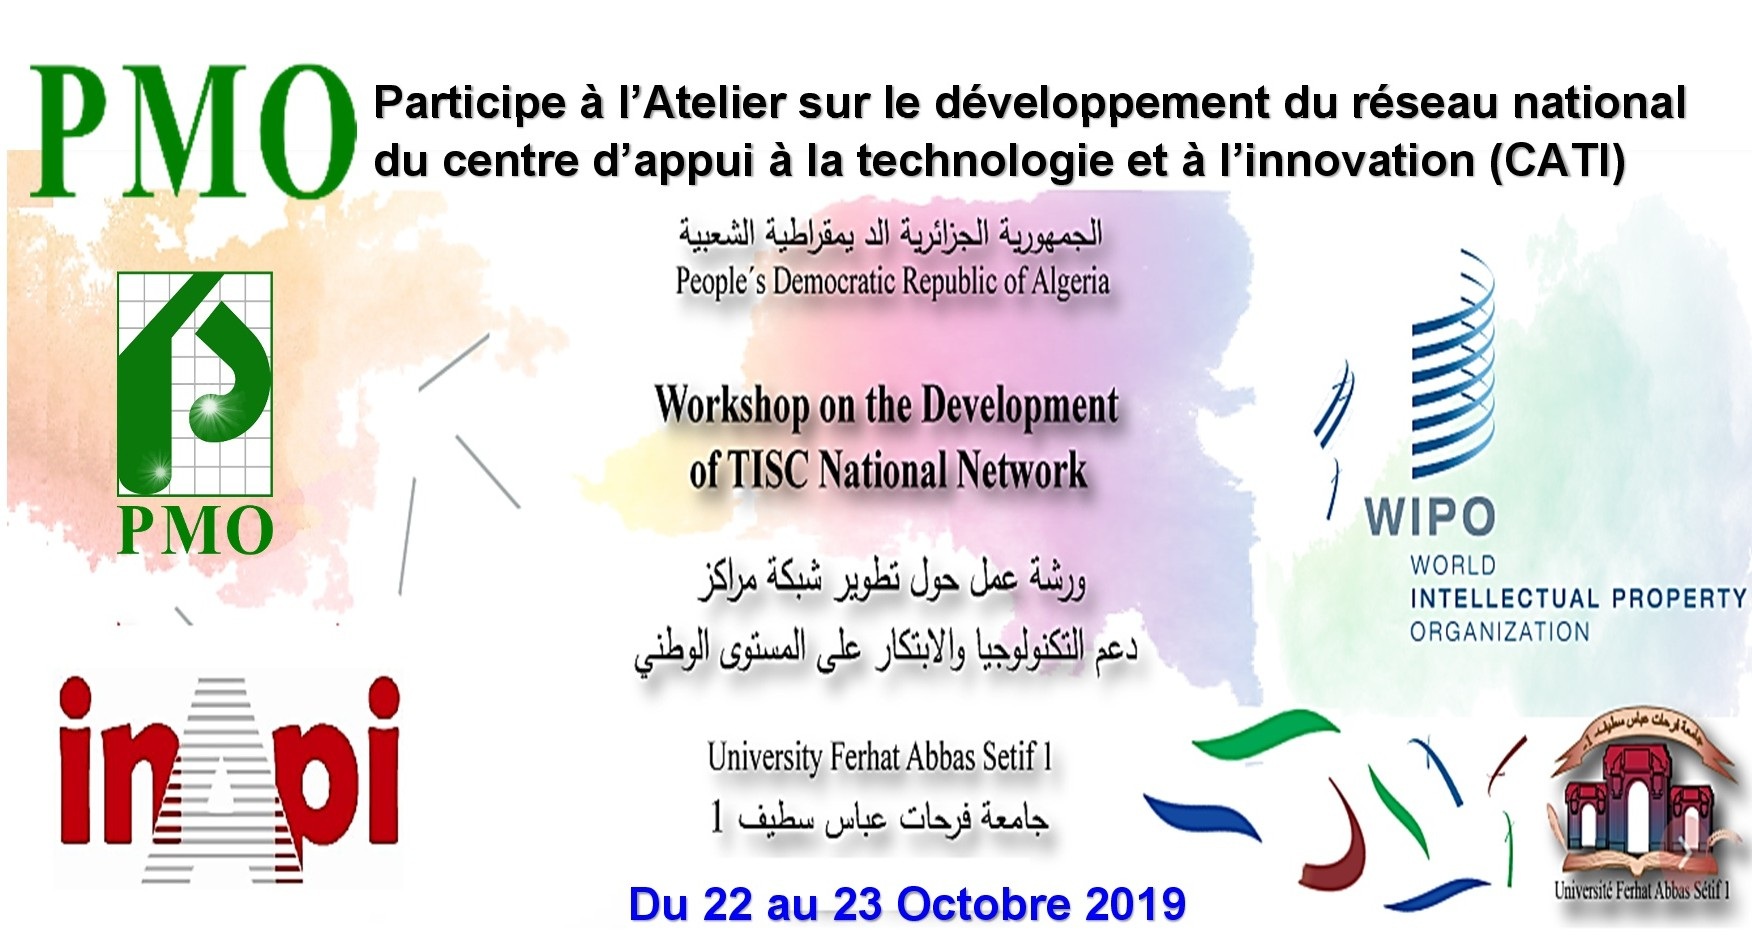 PMO Participe à l’Atelier sur le développement du réseau national du centre d’appui à la technologie et à l’innovation (CATI)